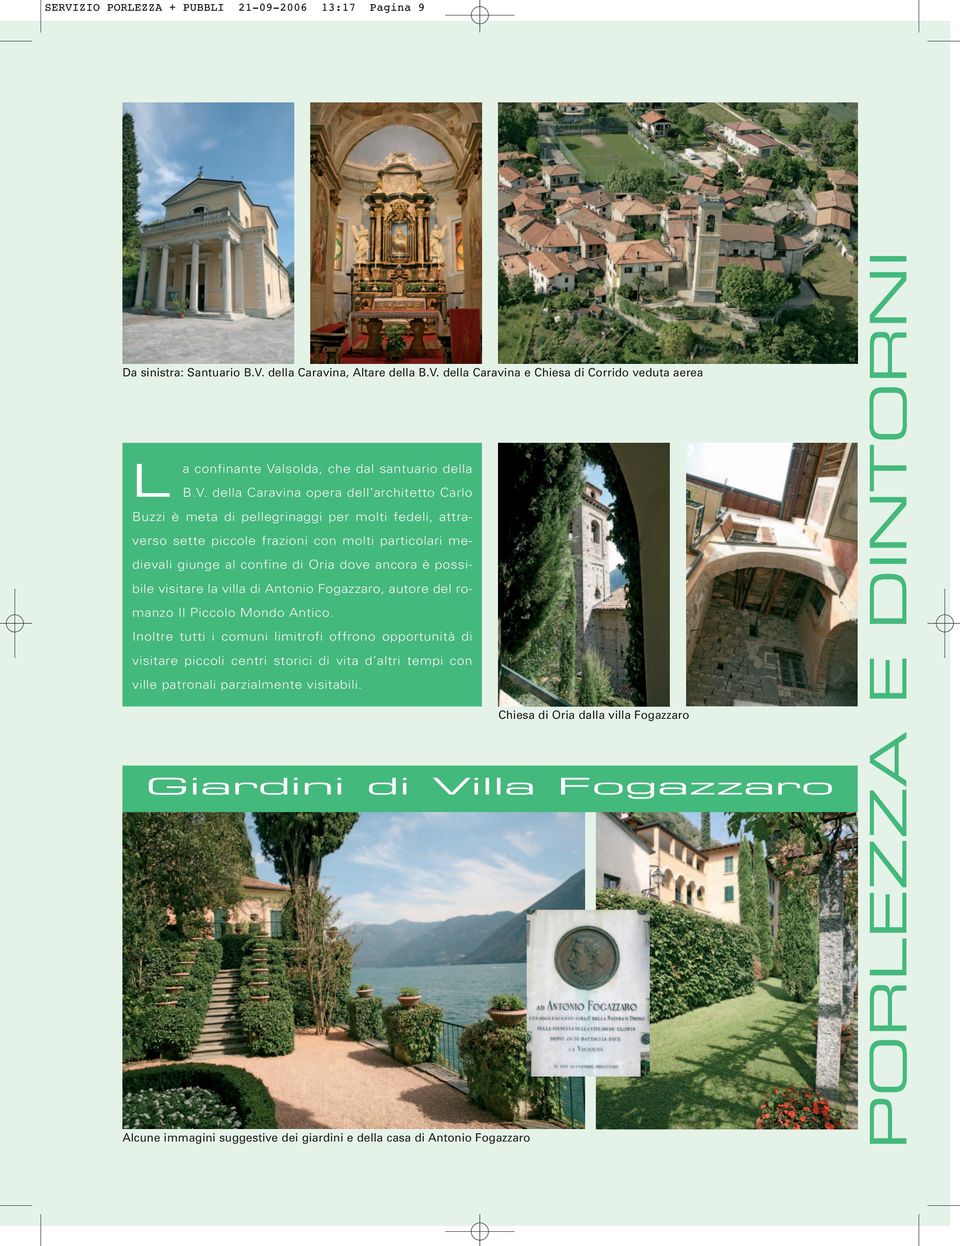 possibile visitare la villa di Antonio Fogazzaro, autore del romanzo Il Piccolo Mondo Antico.